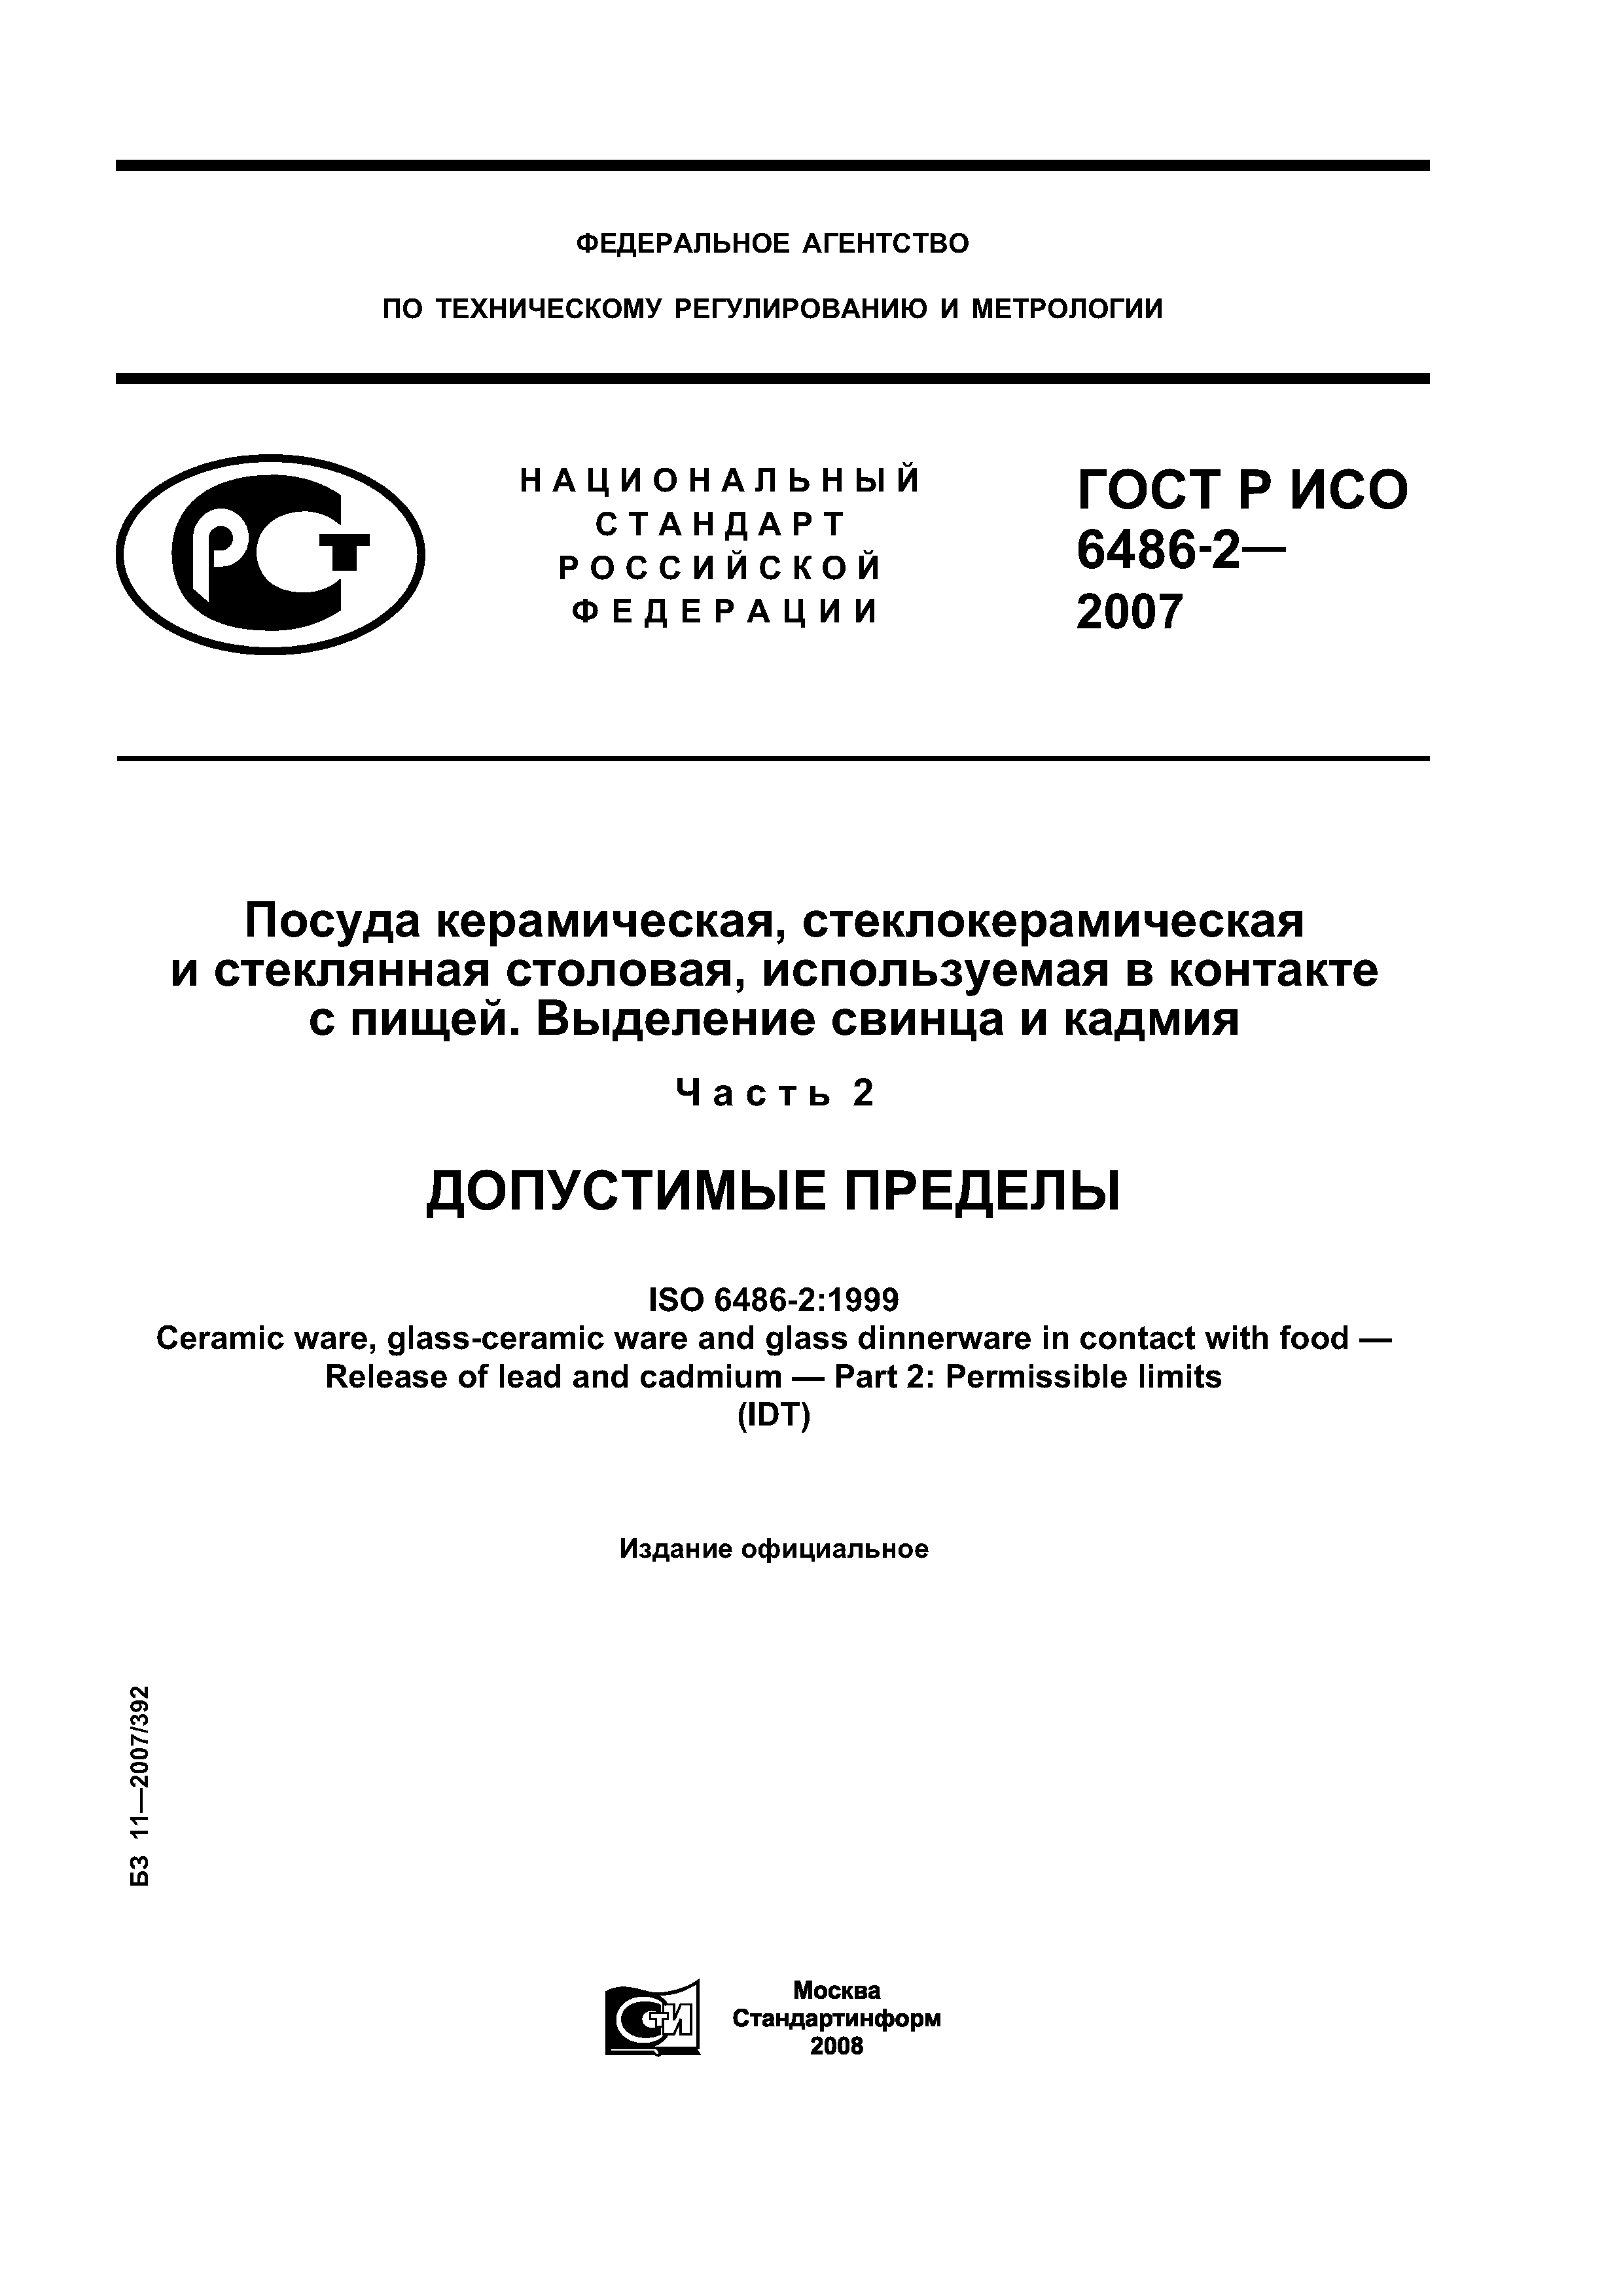 ГОСТ Р ИСО 6486-2-2007